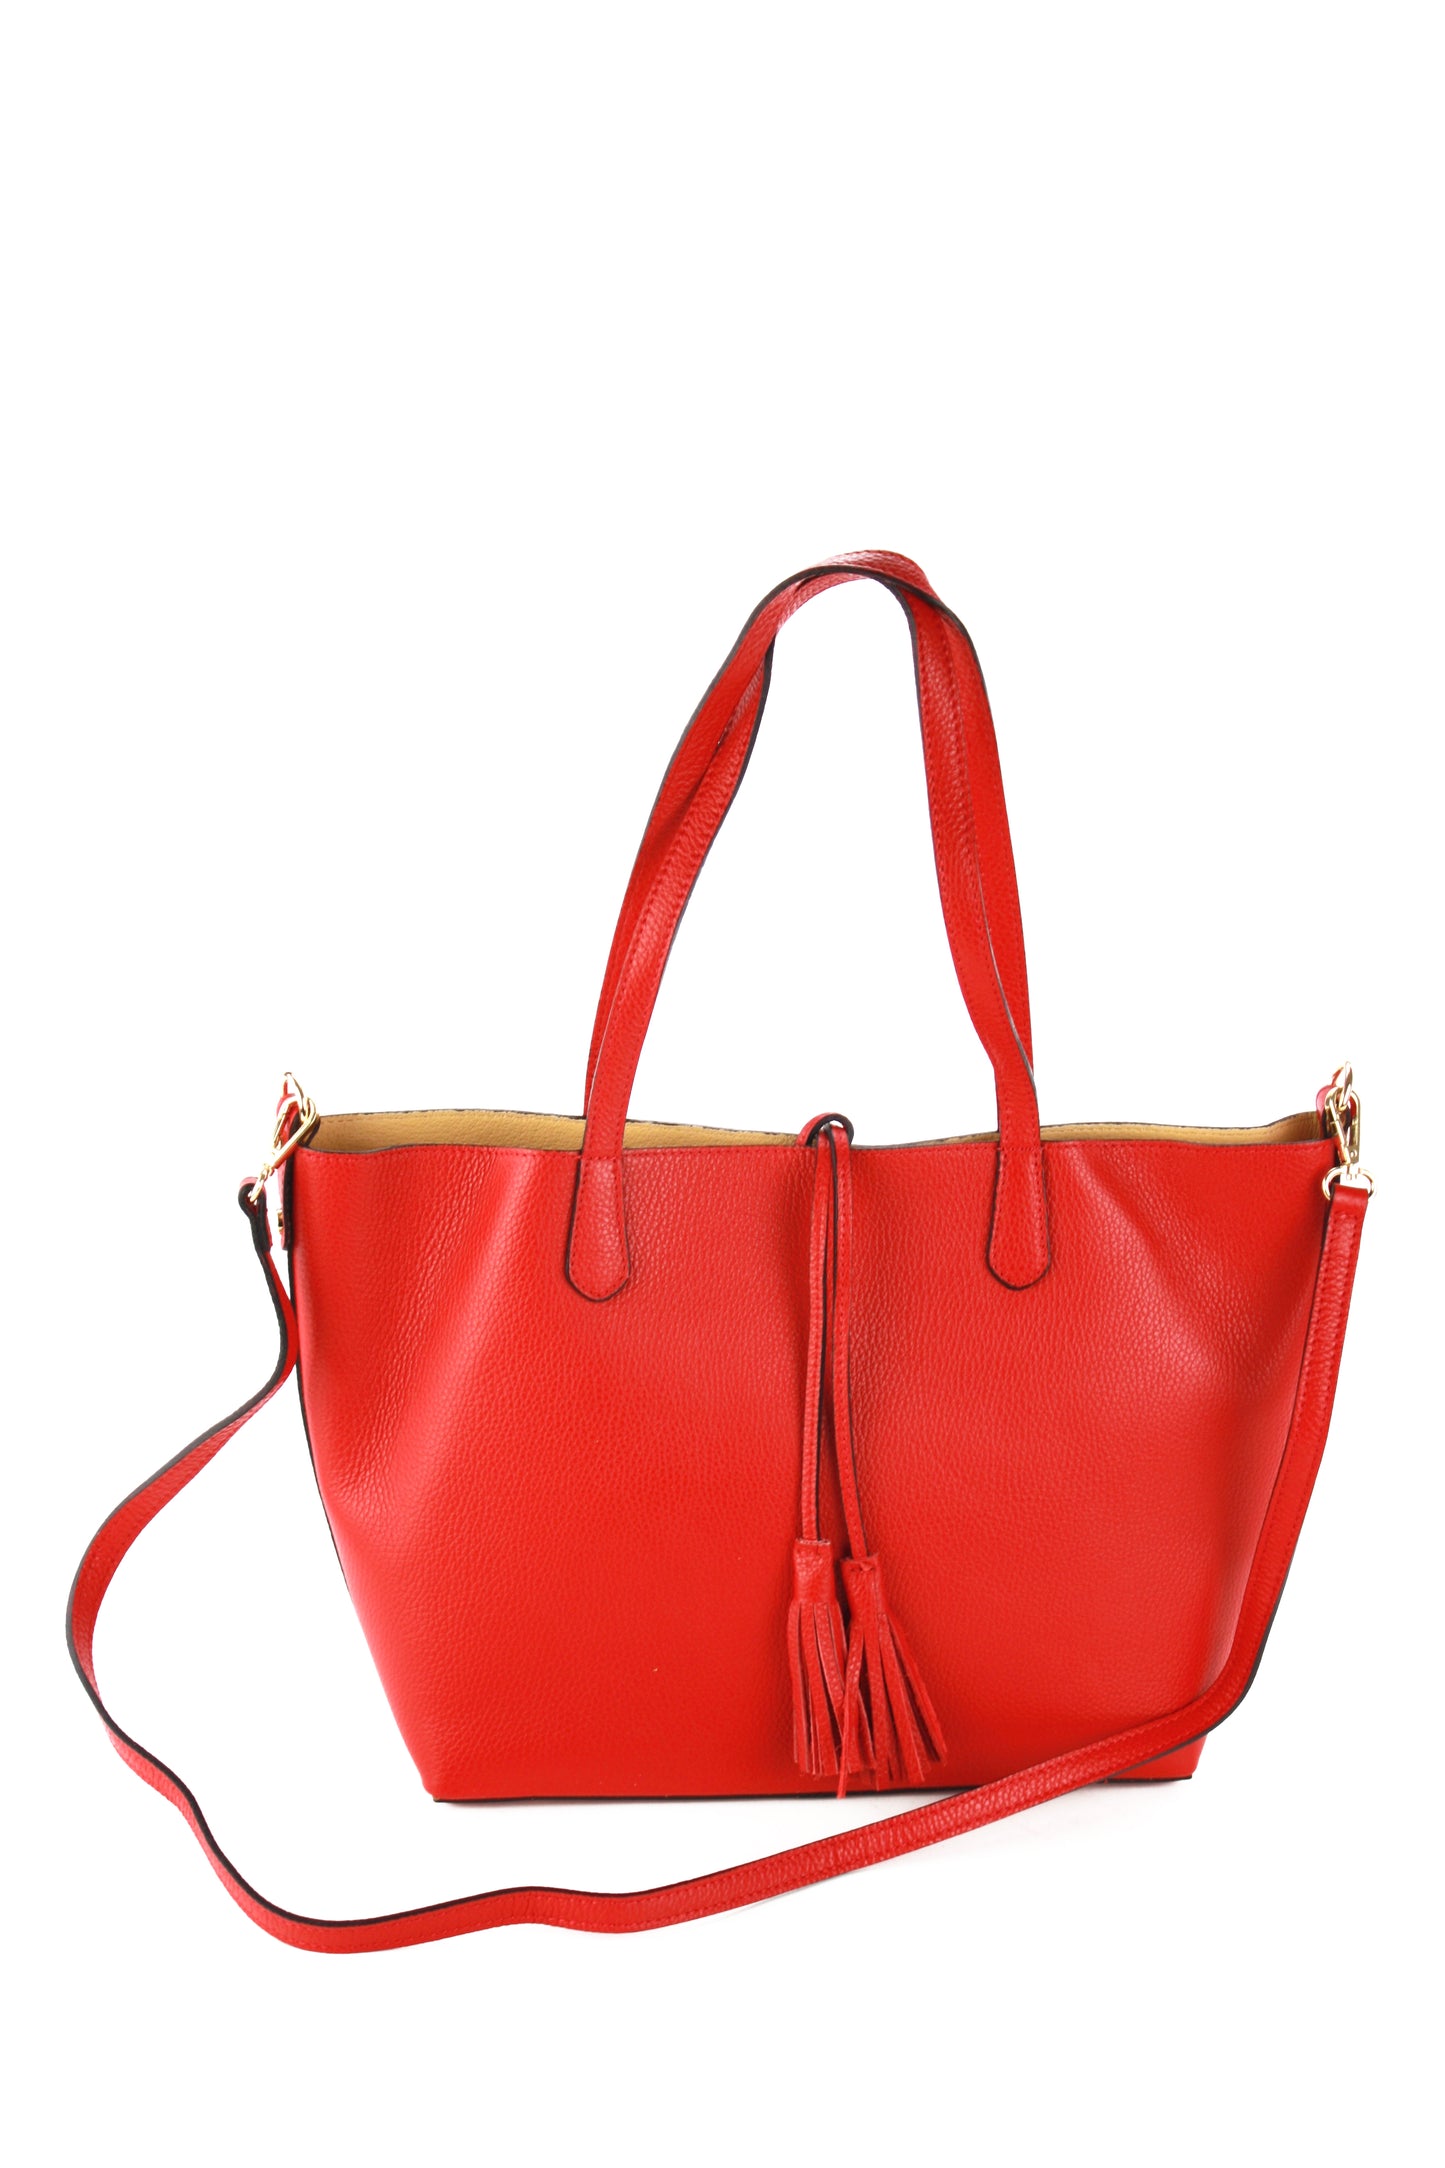 Belinda shopping bag in red